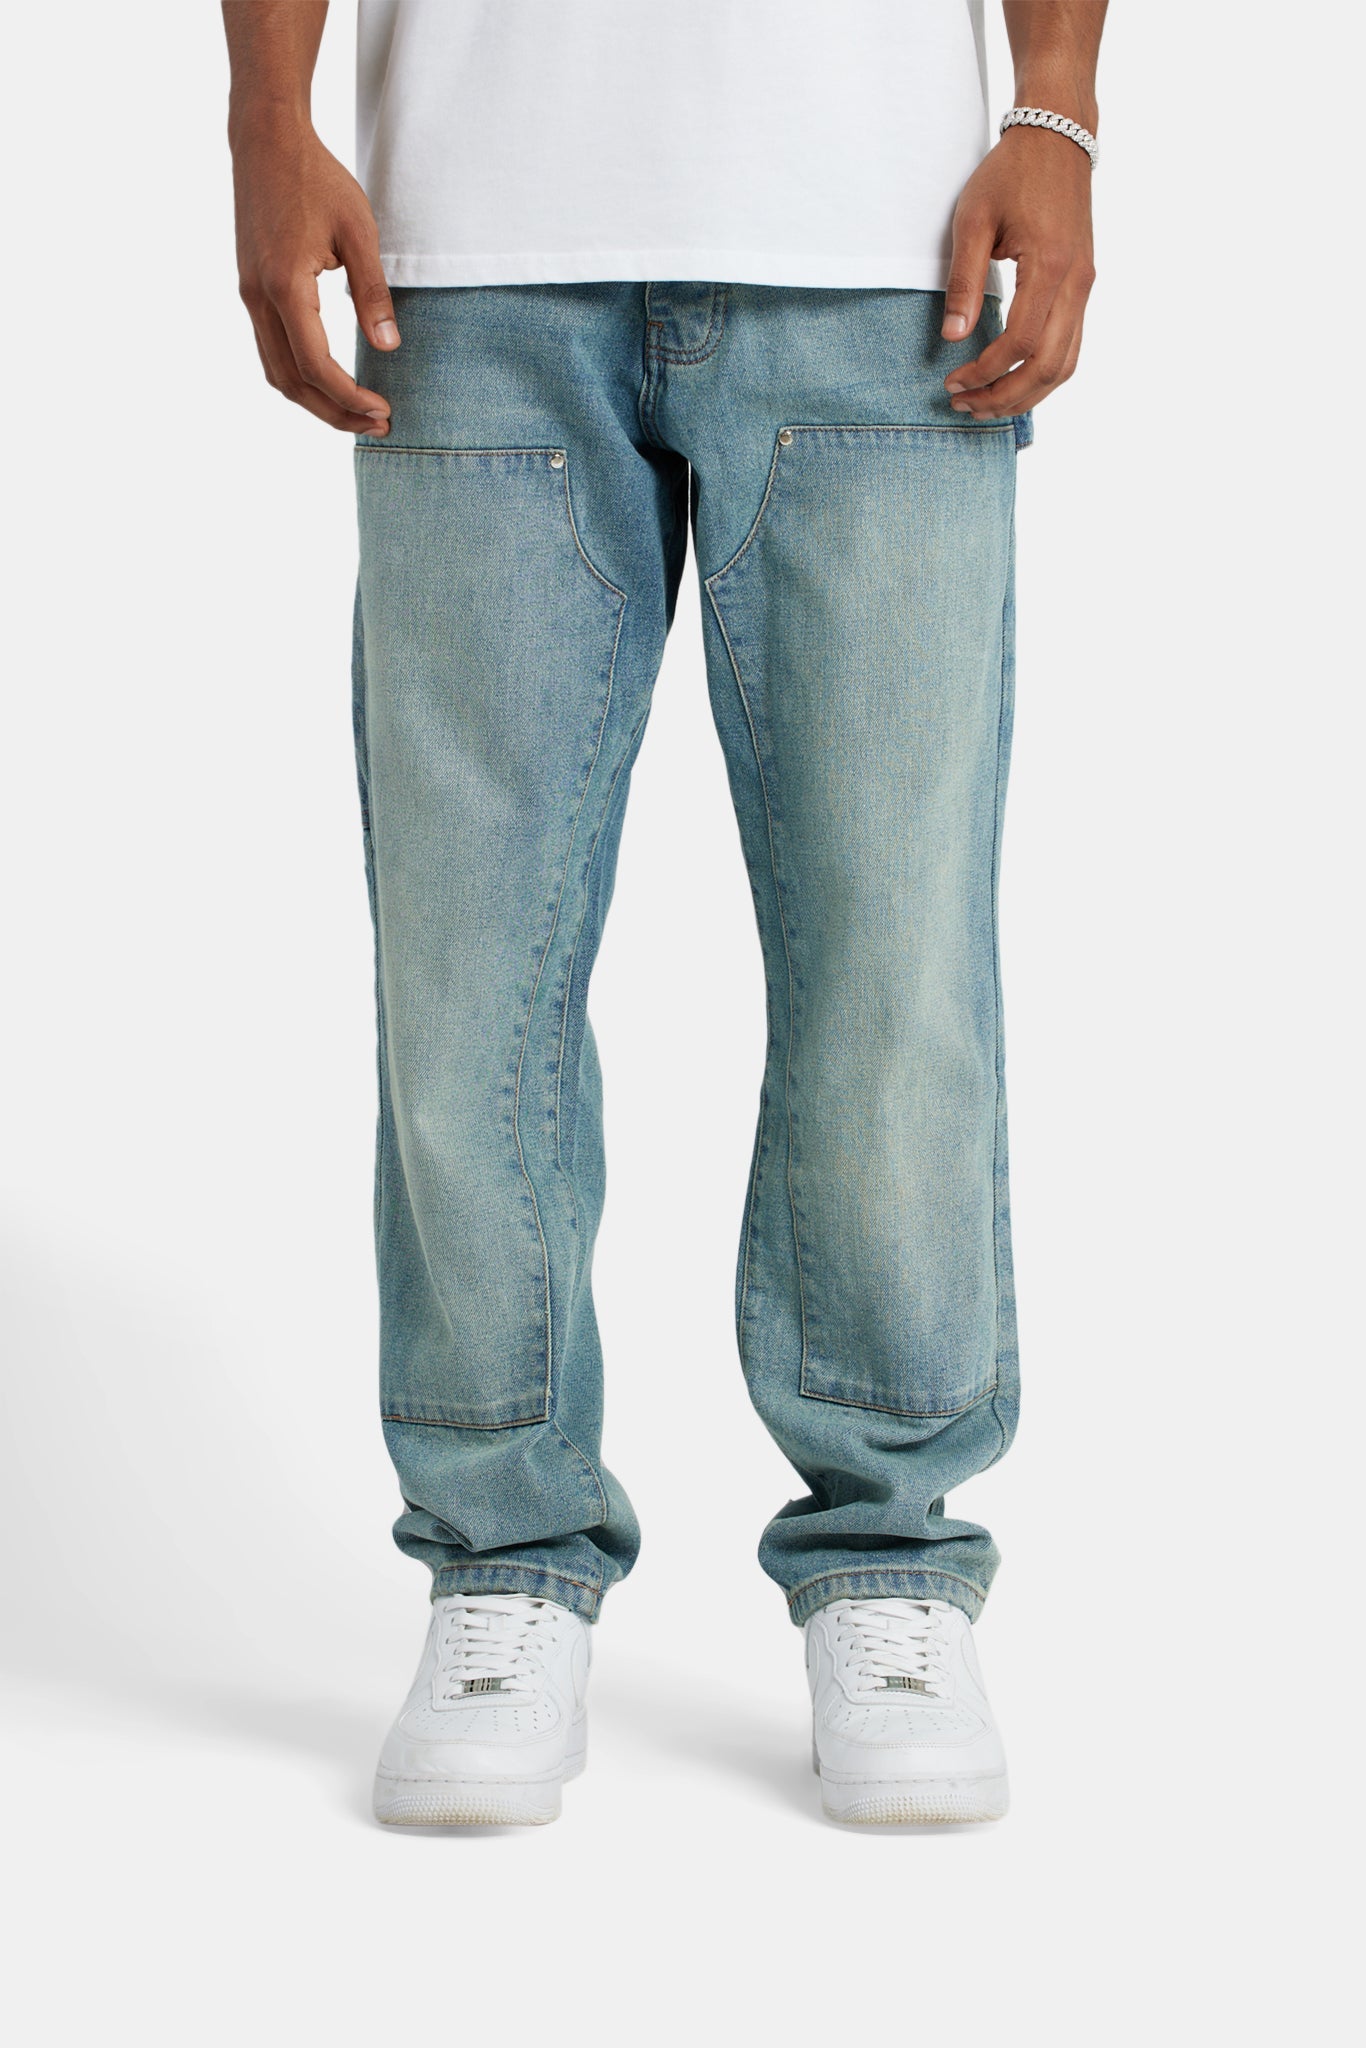 Carpenter Jeans - ANTIQUE WASH | Mens Denim | Shop Jeans at CERNUCCI ...